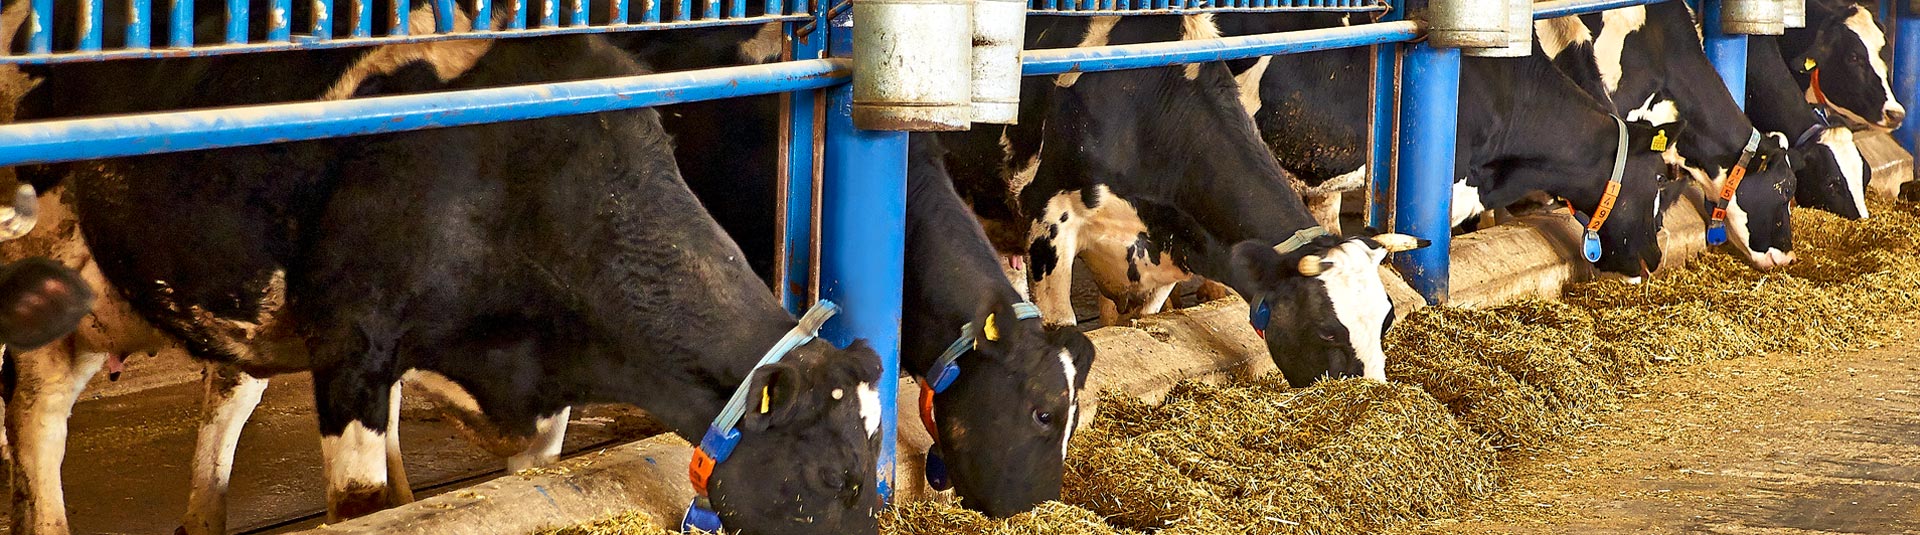 مزرعة تشومرا - إرن تبه لإنتاج الحليب 